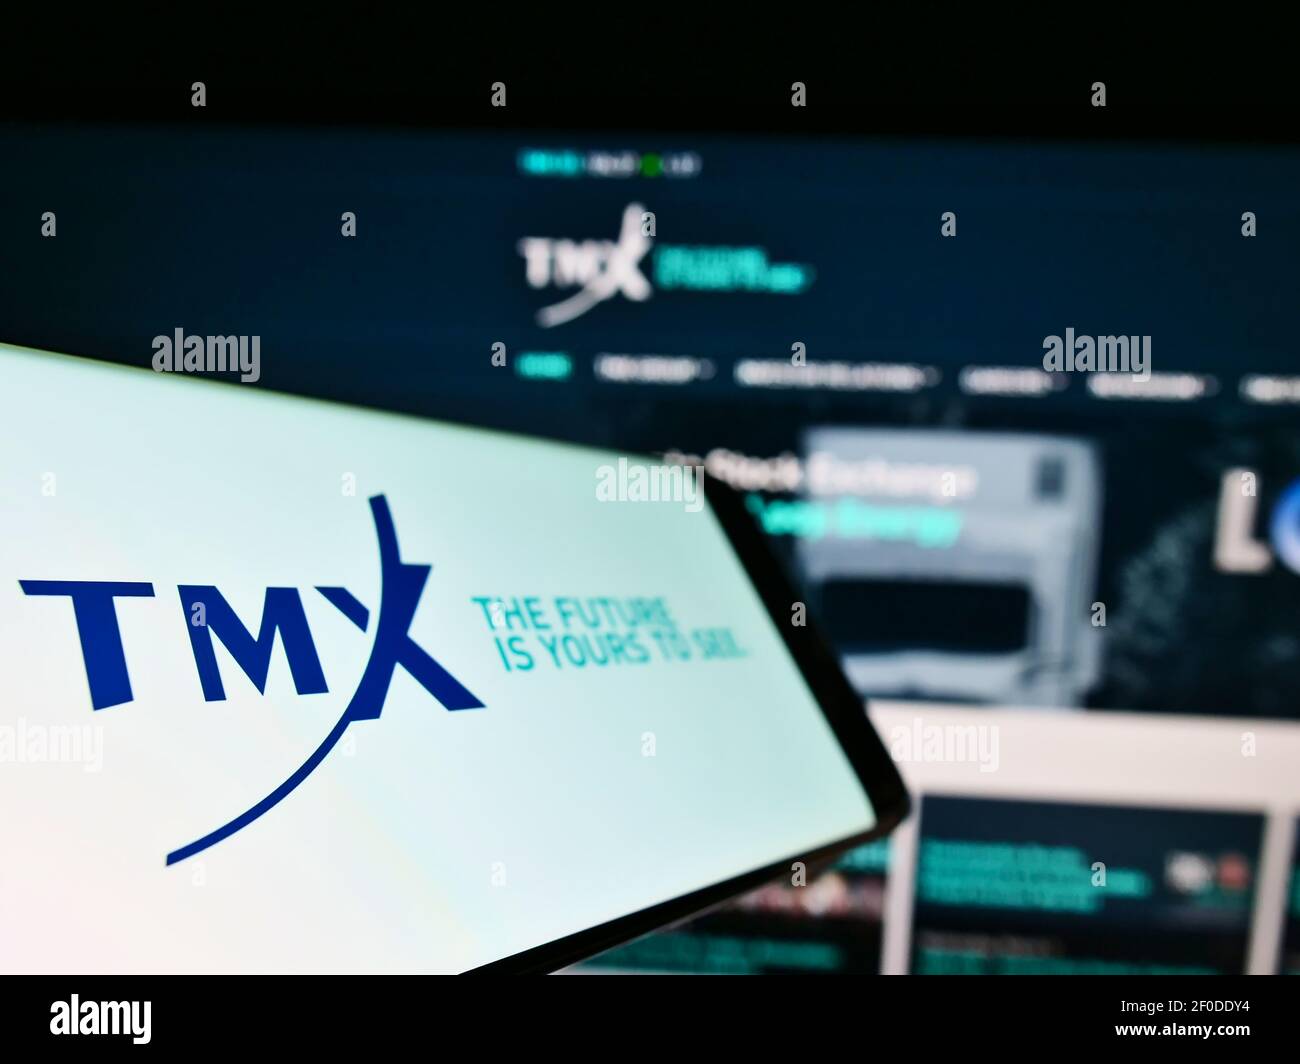 Tmx group fotografías e imágenes de alta resolución - Alamy